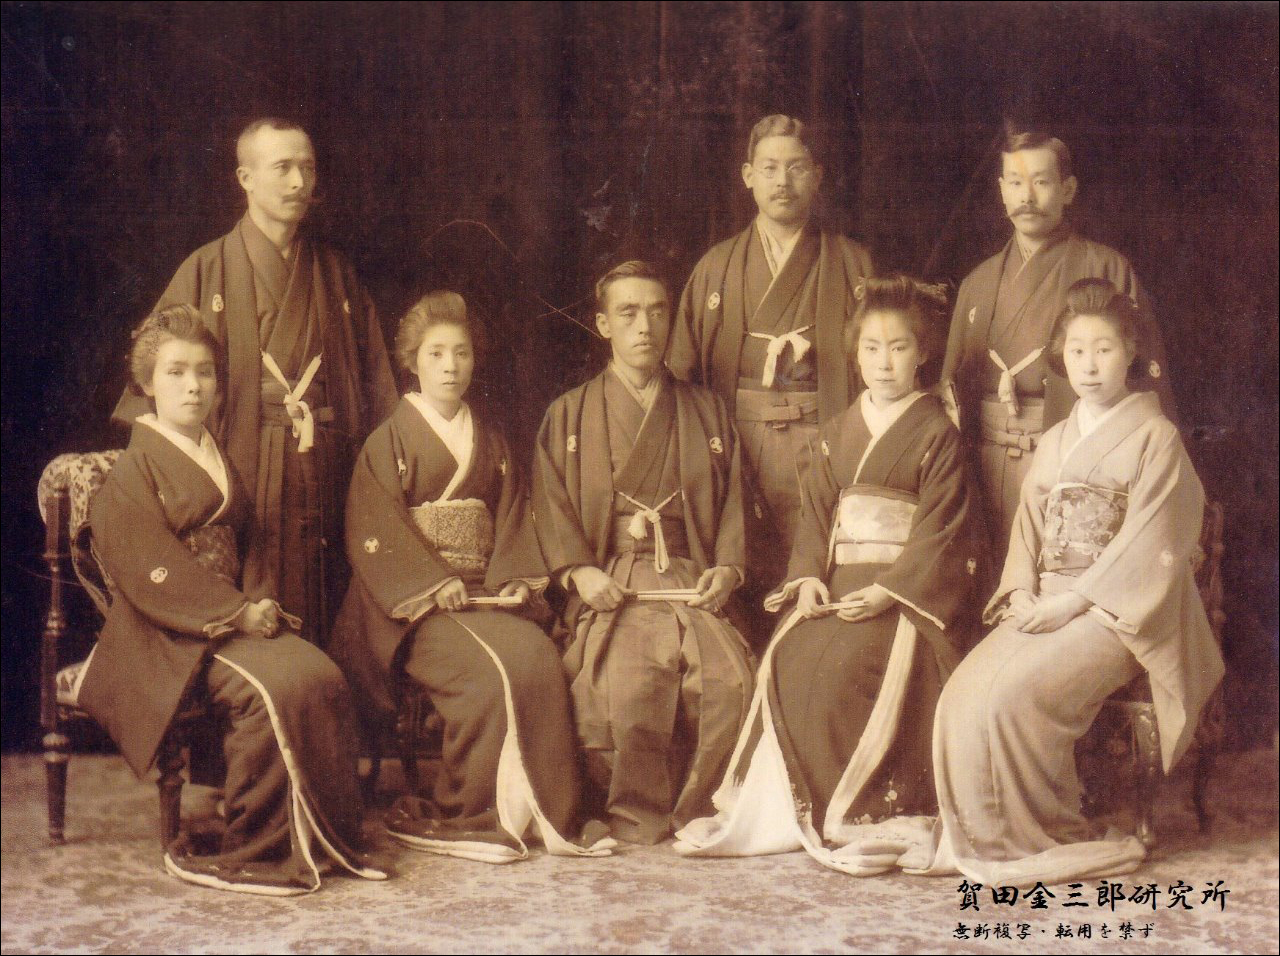 Kada Kinzaburo (középen) kegyencei körében. Érdemes megemlíteni, hogy Kinzaburo az 1900-as évek elején a Musashi Electric Railway Co.-nál, majd a Tokyu Railway Co.-nál is vezető tisztséget töltött be. (Forrás: Kada Kinzaburo Kutatócsoport)